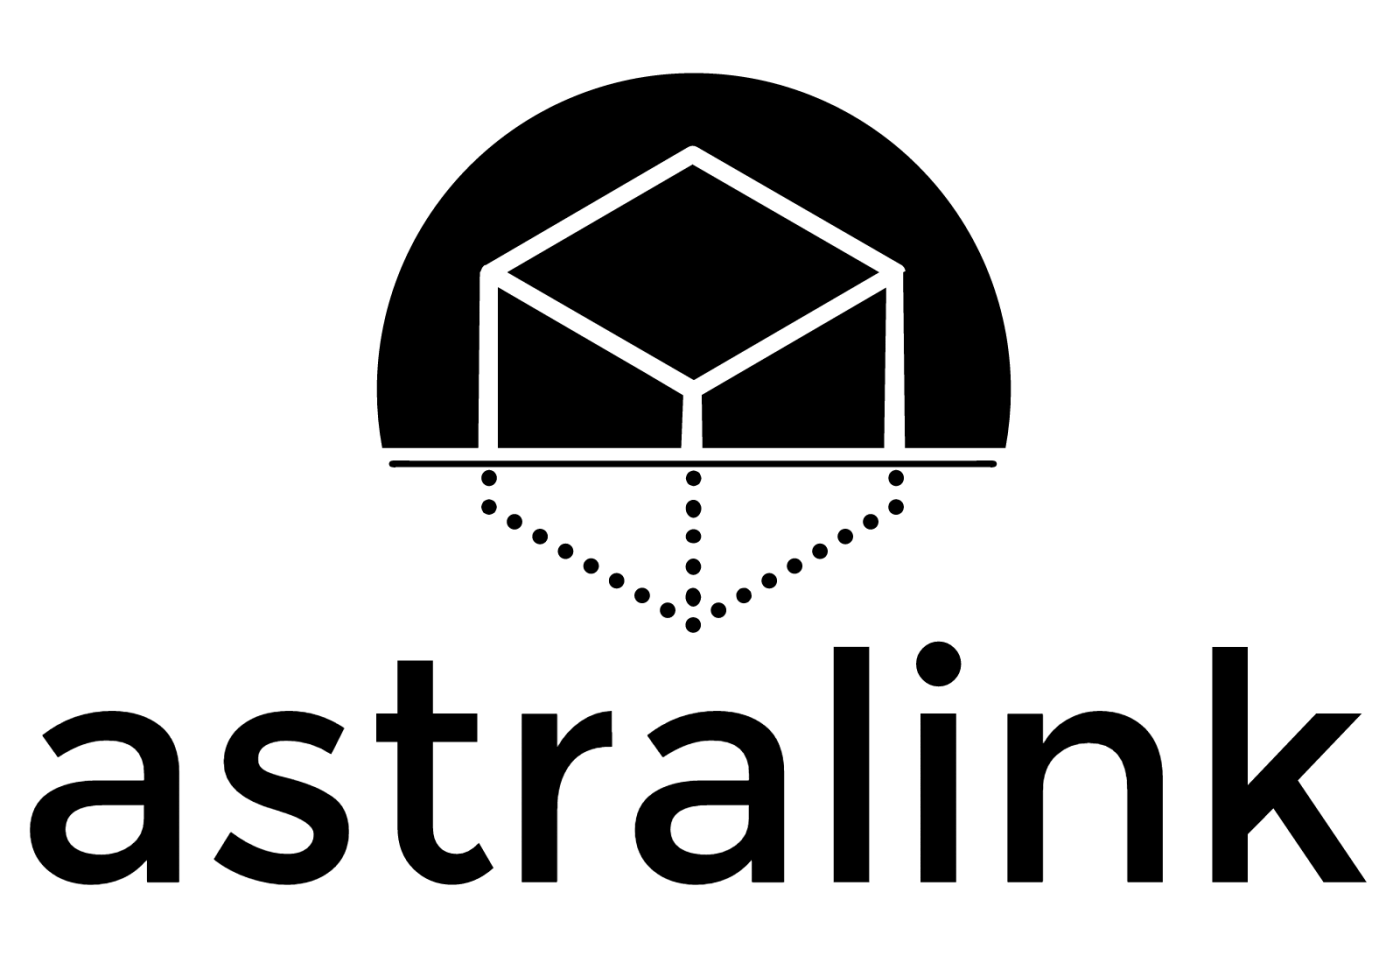 astralink-logo-min.png